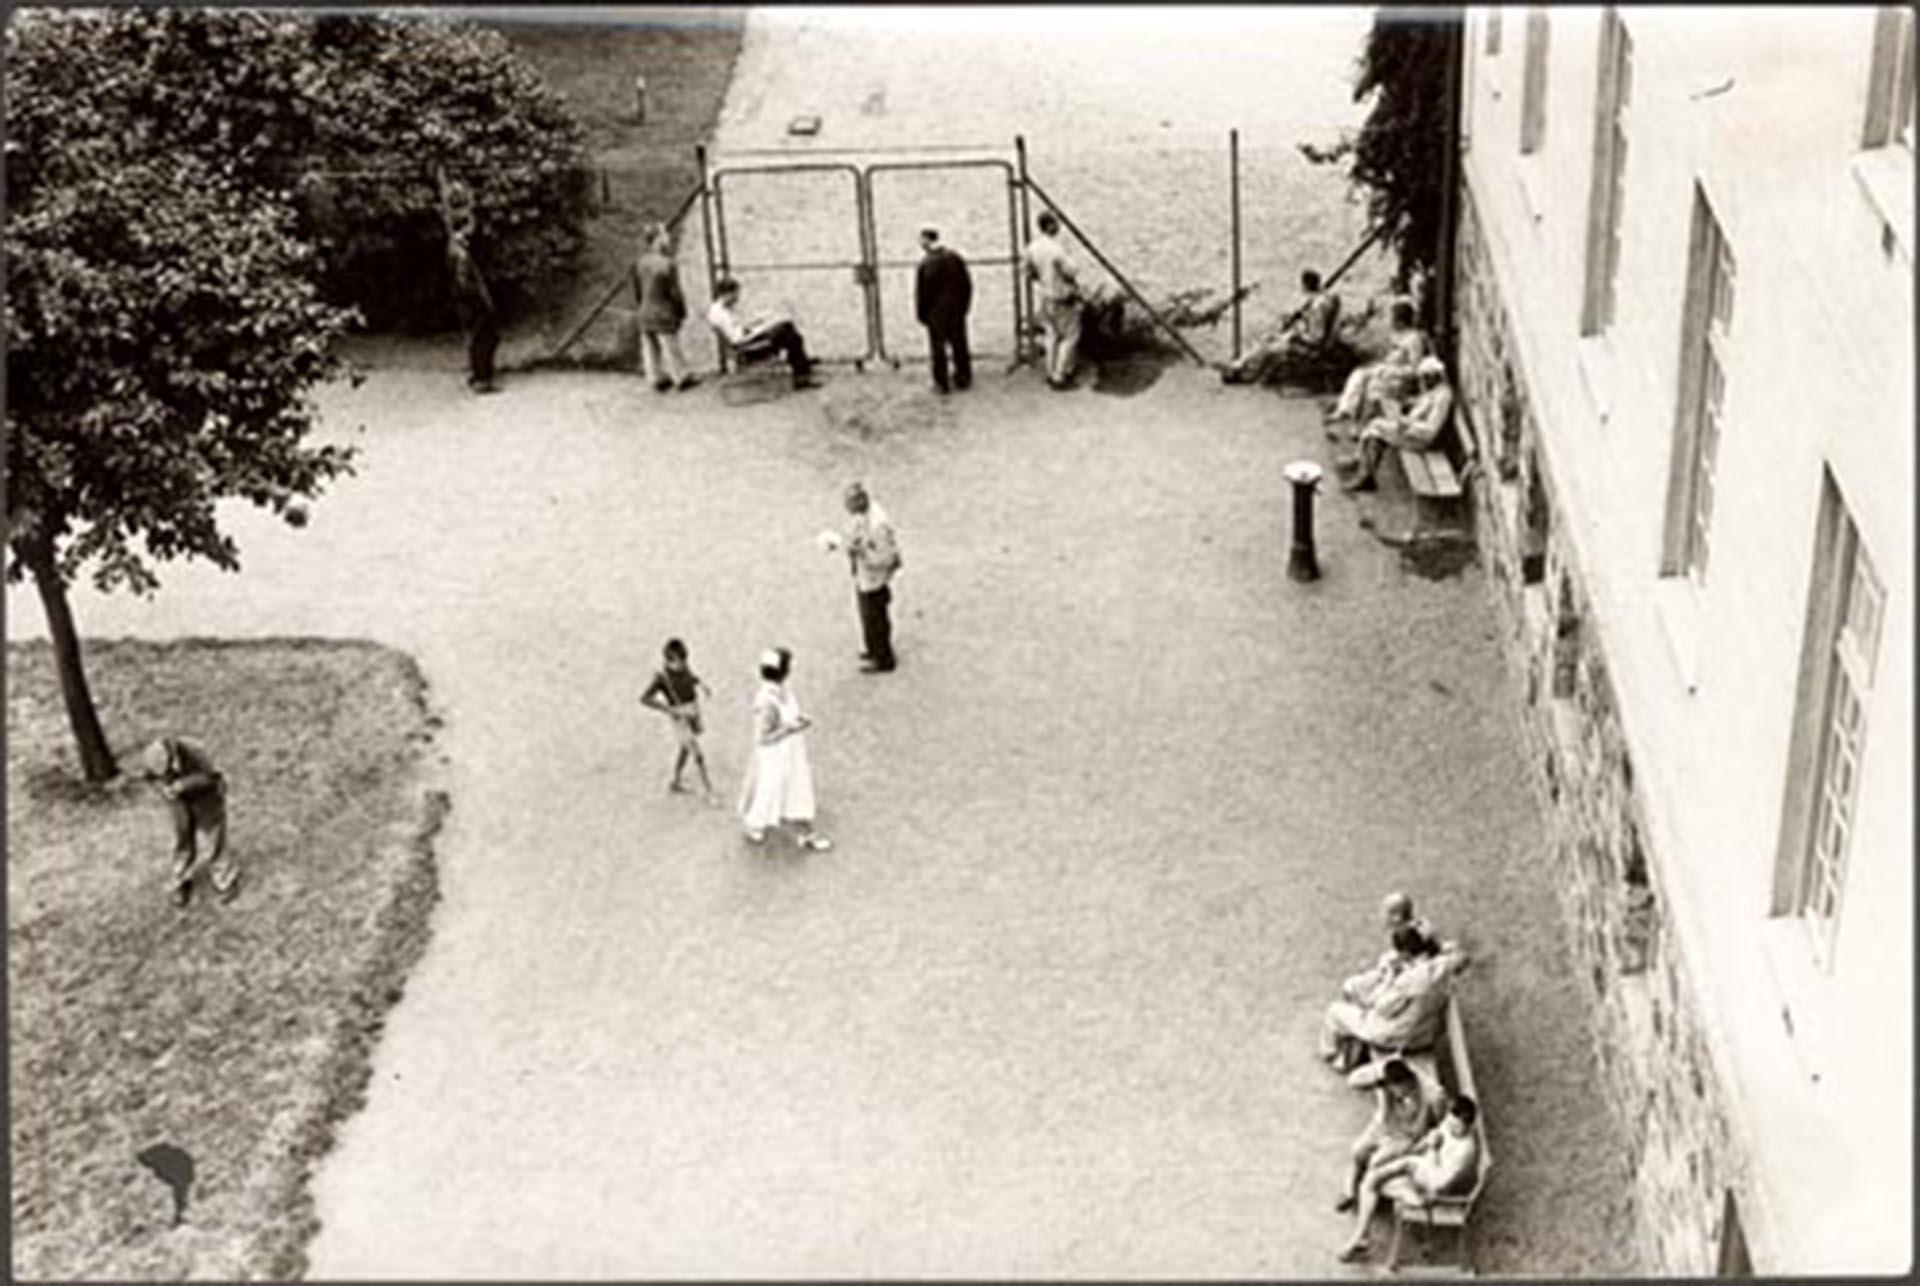 Rastgården på Vipeholms sjukhus snett från ovan, 1953. I mitten av fotot går en patient, troligen ett barn, bakom en anställd i sjuksköterskeuniform. Vid ett staket står några patienter och tittar ut. På två bänkar längs en husvägg sitter några patienter.